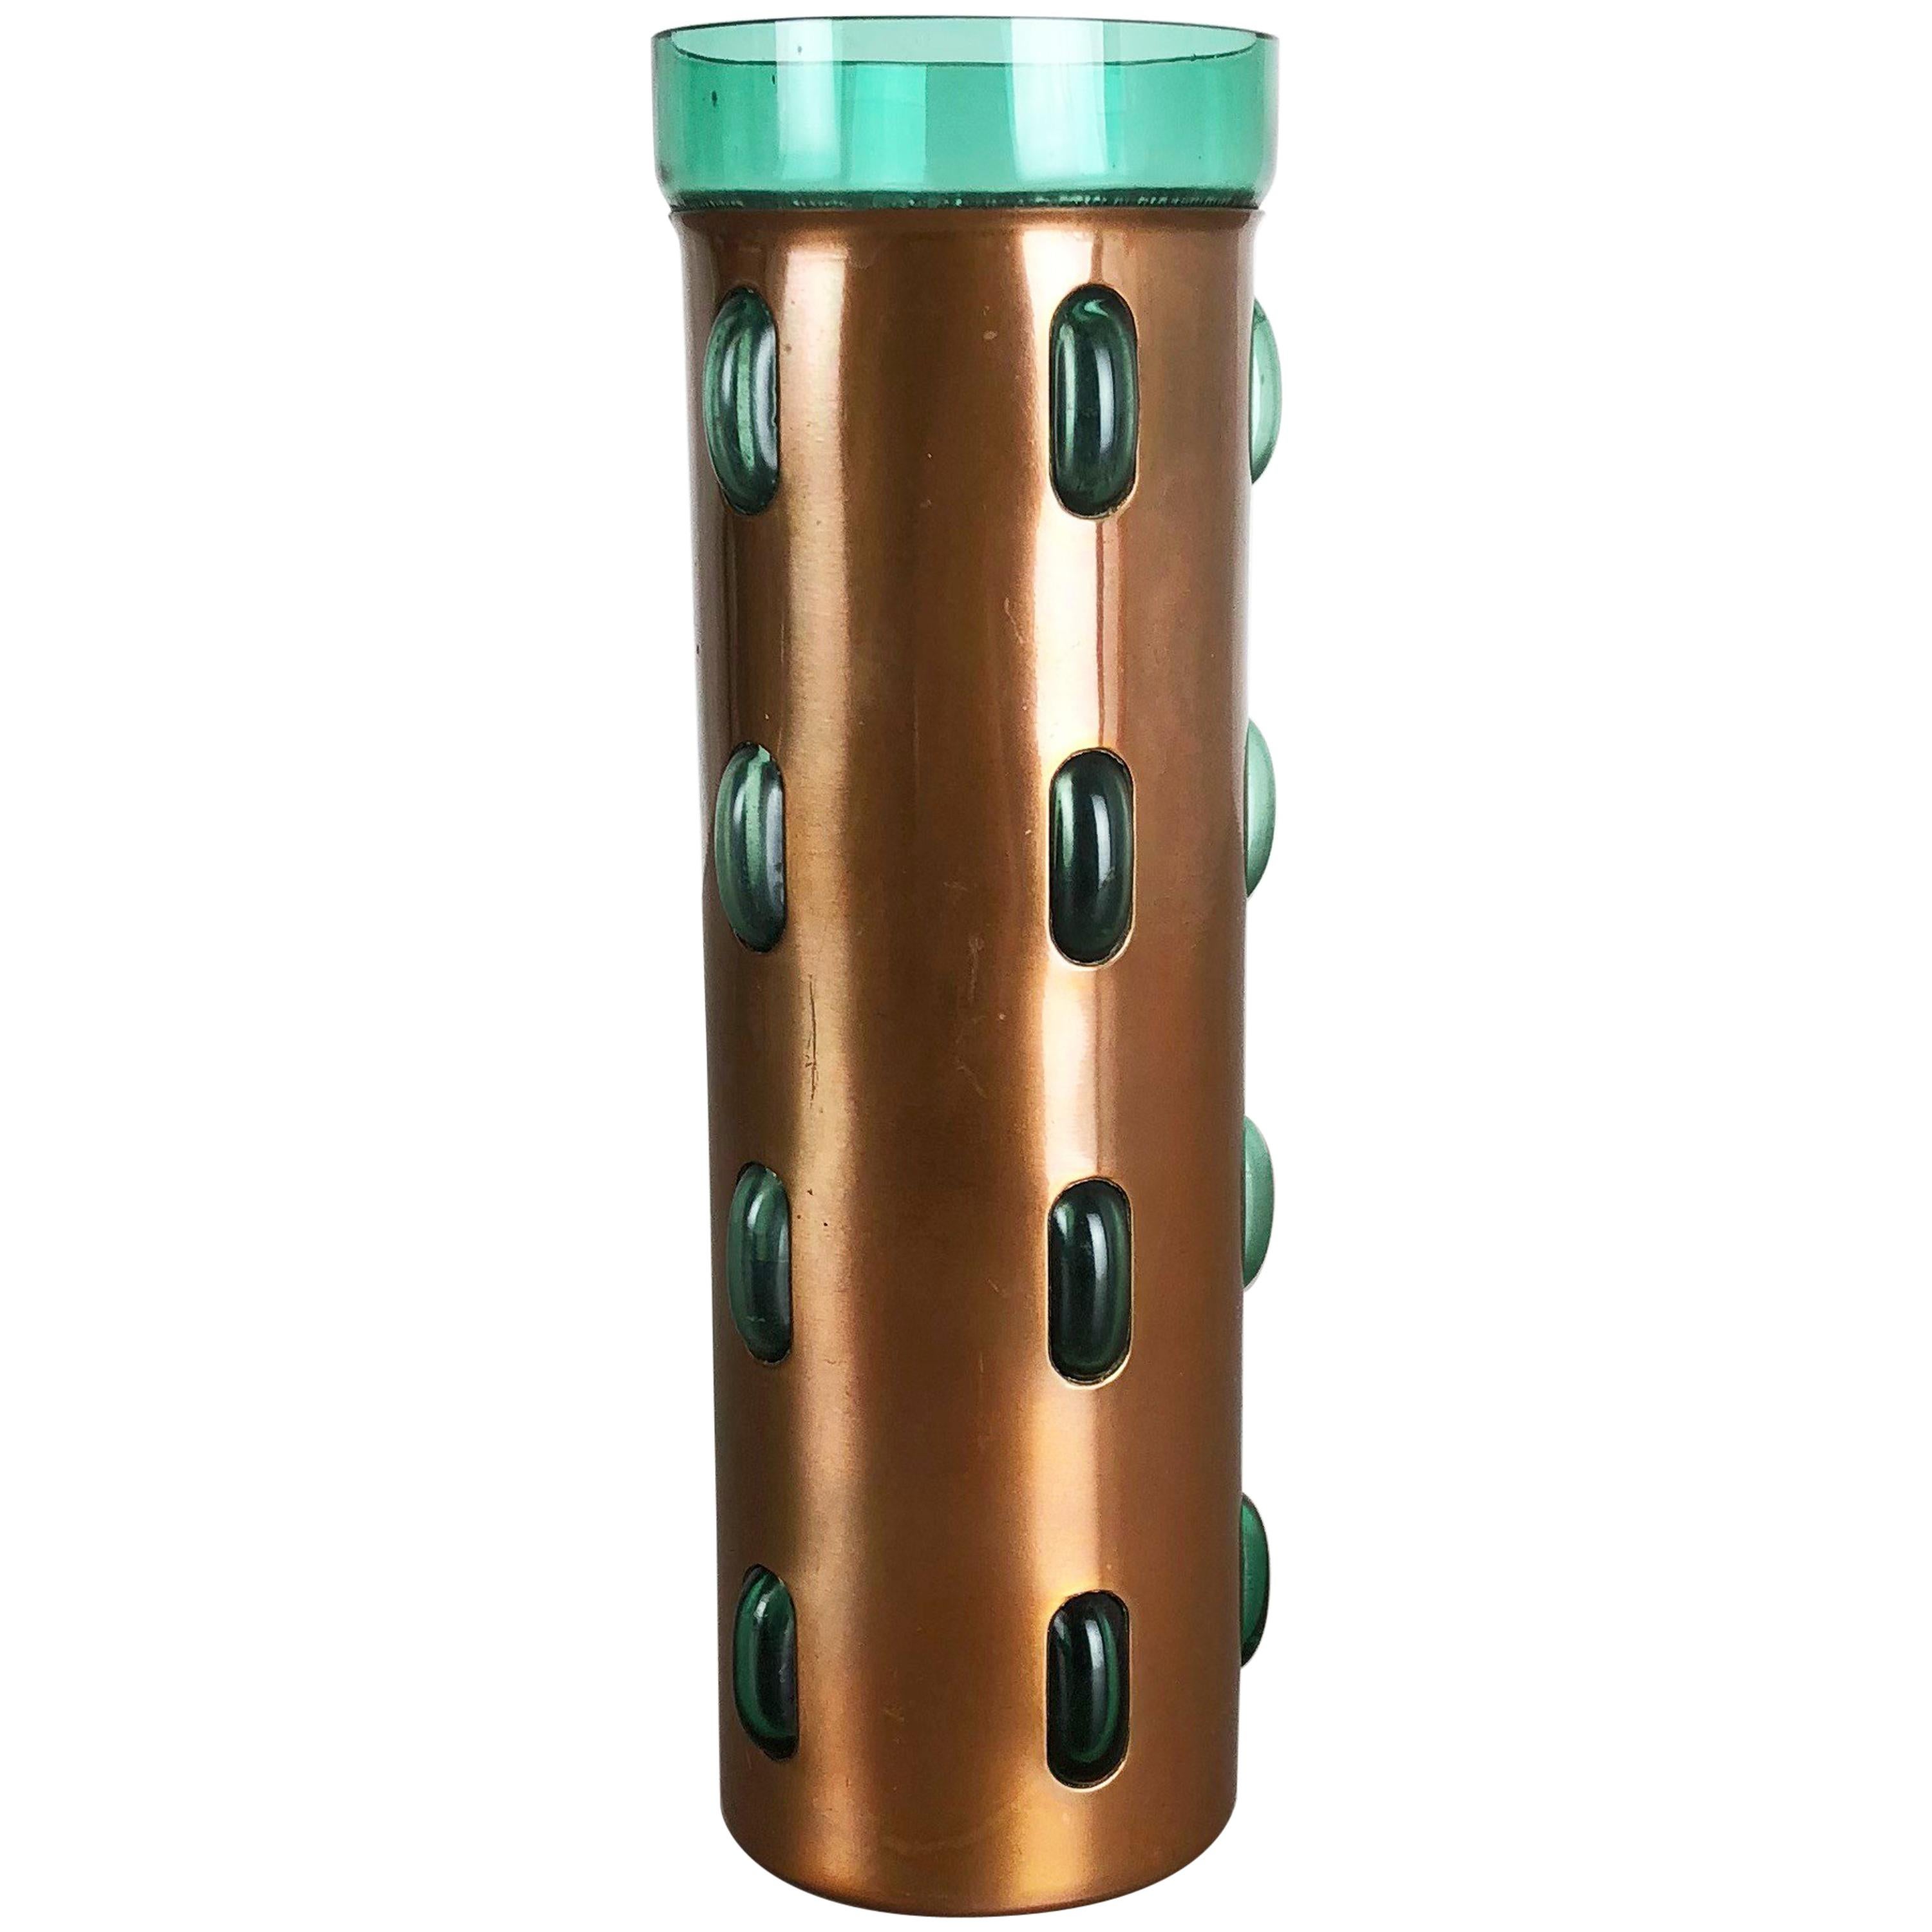 STABILISER Ring Green Fine-acidometer Cylinder Glass 20 ML kunststofffuß 